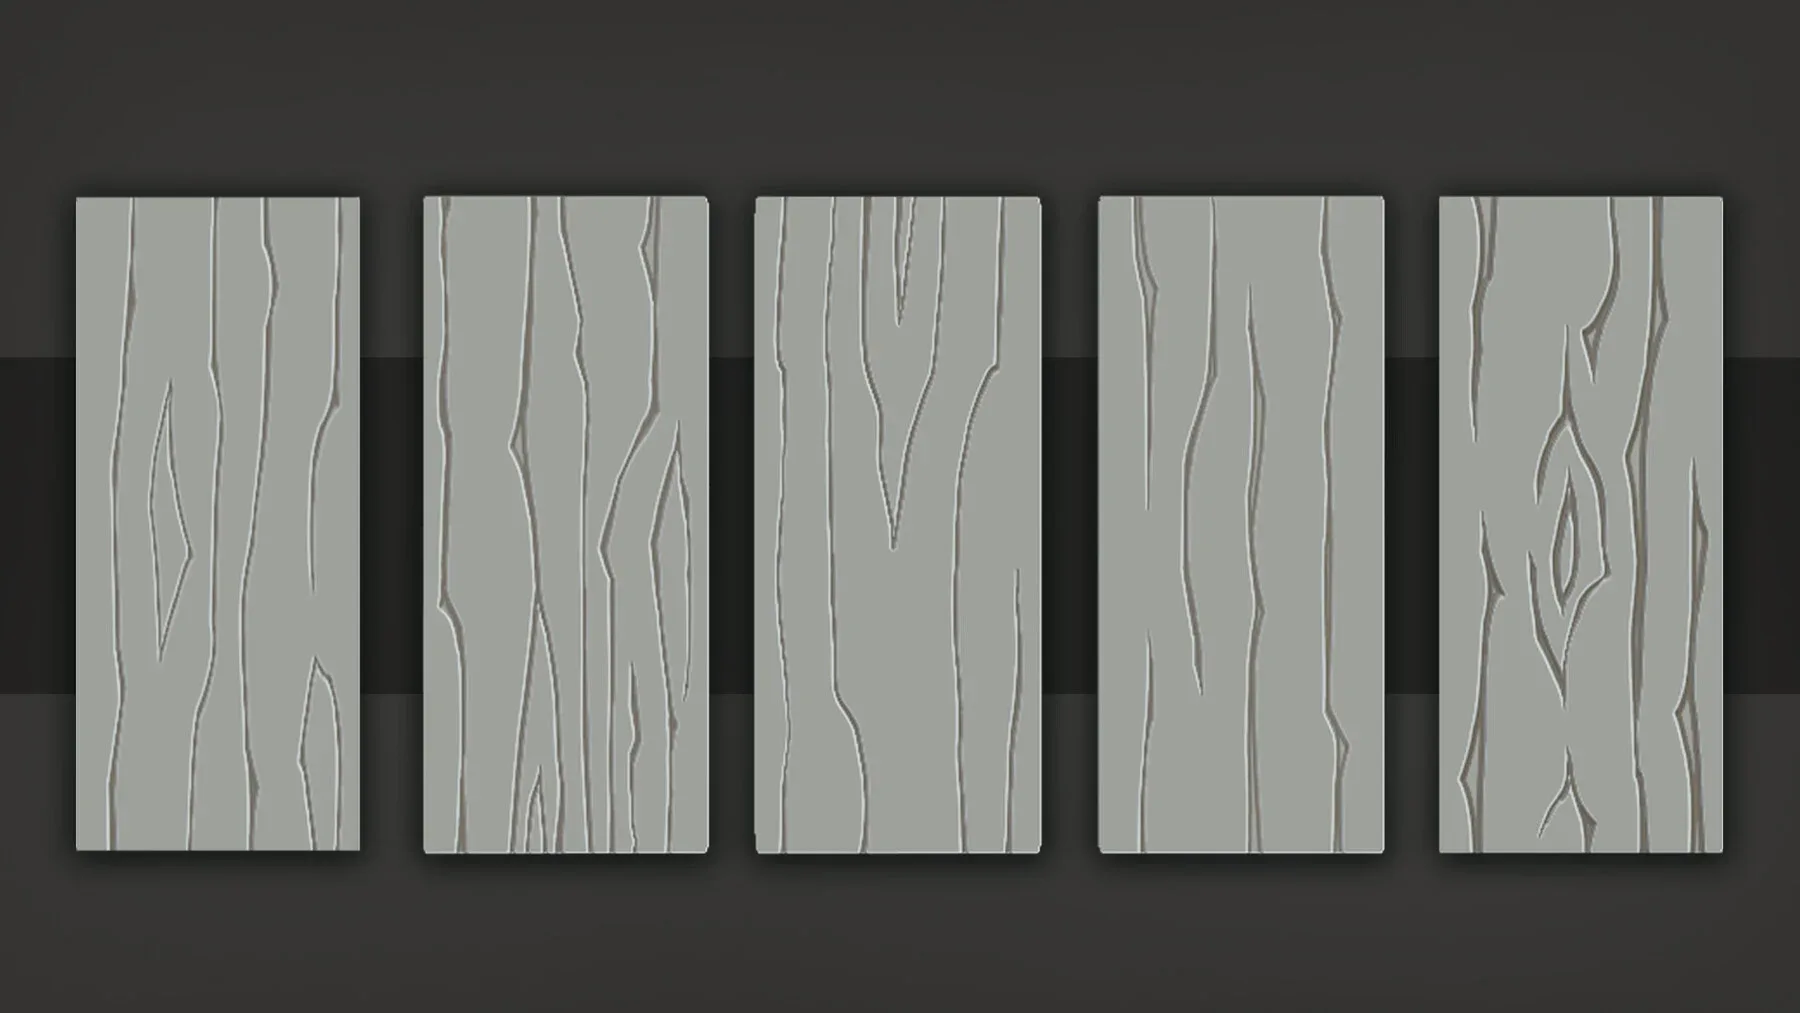 Stylized_Wood Patterns_2.0